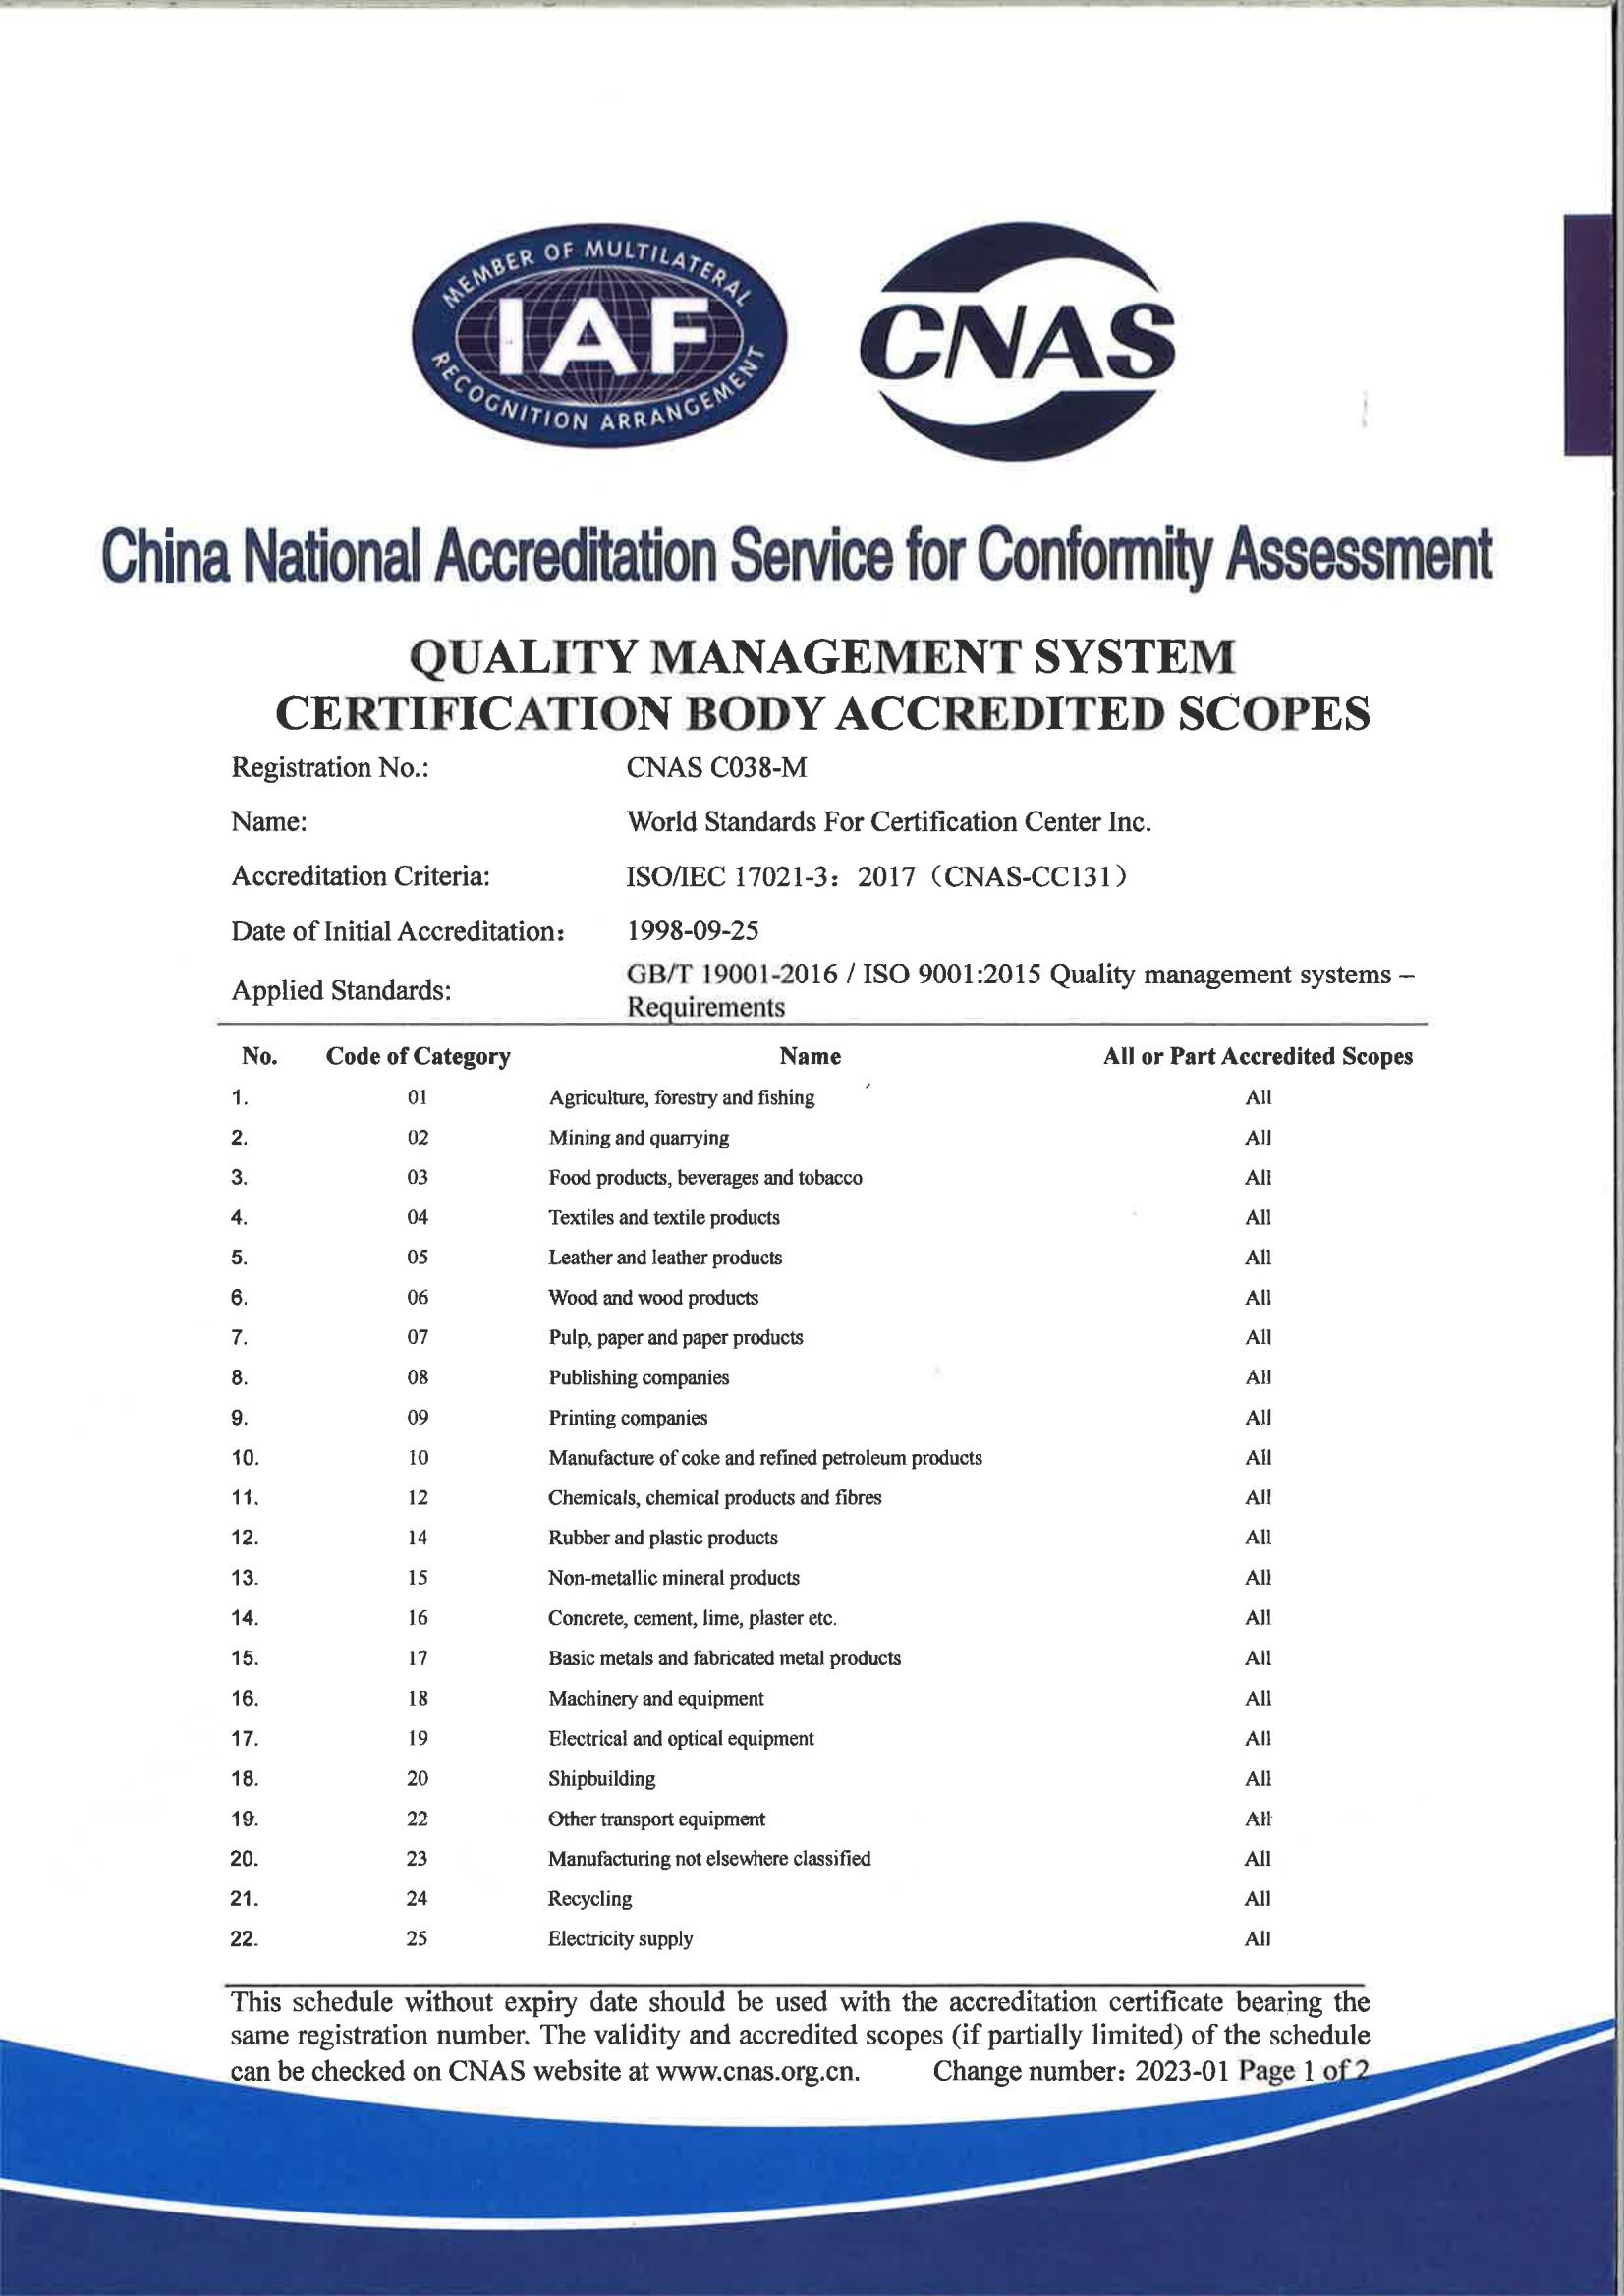 质量管理体系认证机构认可范围-英文版_00.jpg